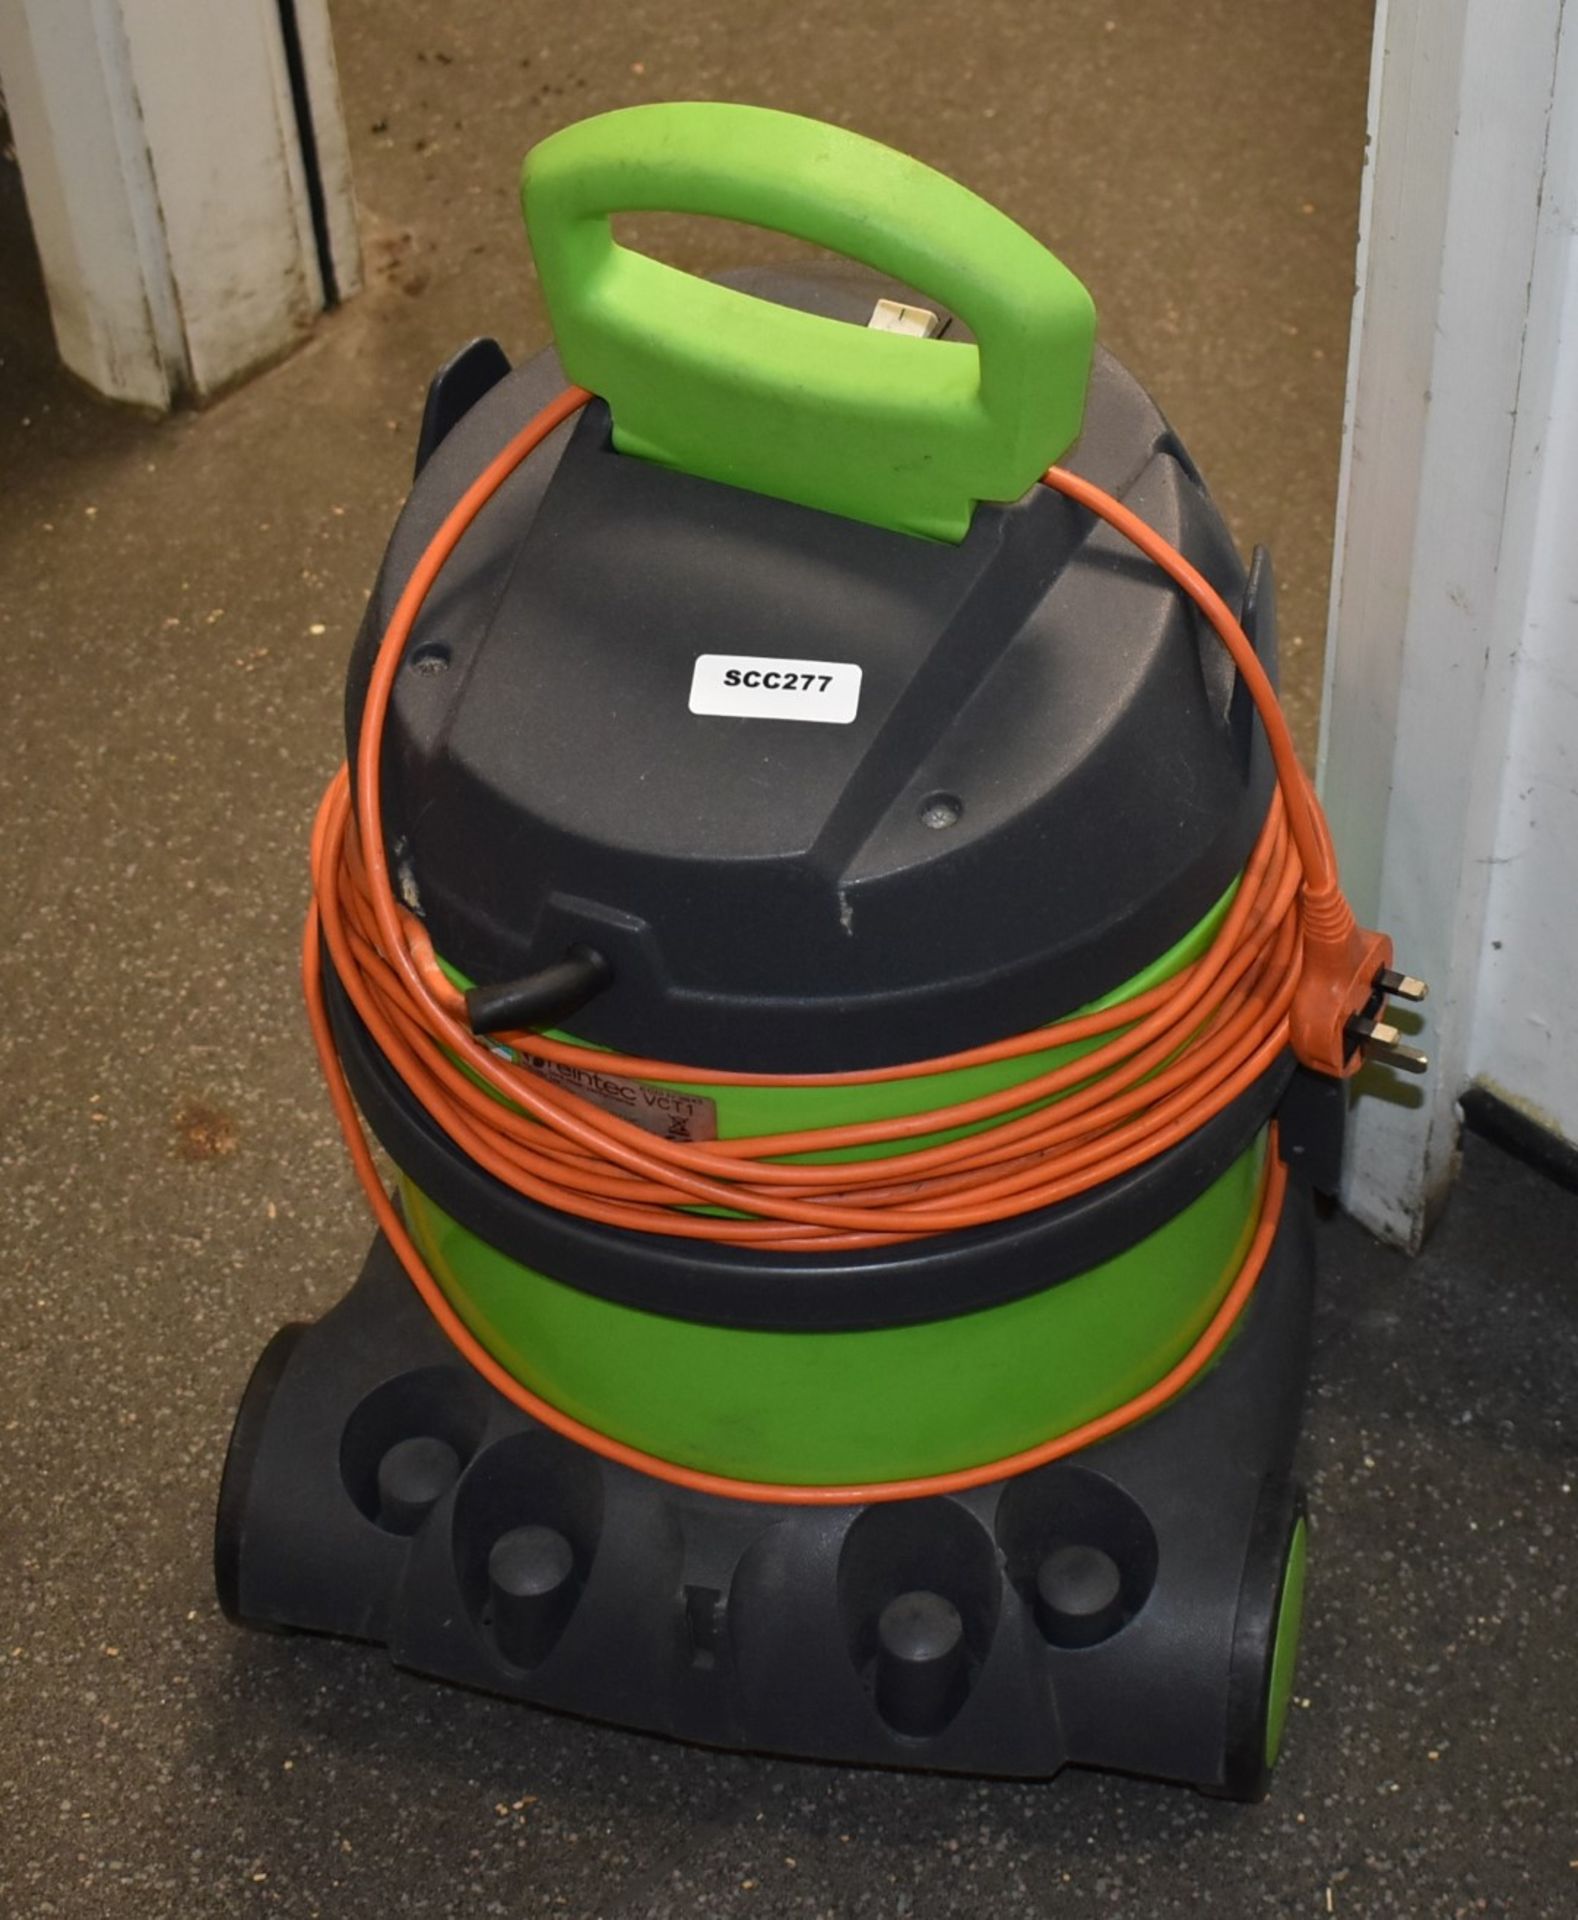 1 x Reintec VCT1 Vacuum Cleaner - Image 2 of 4